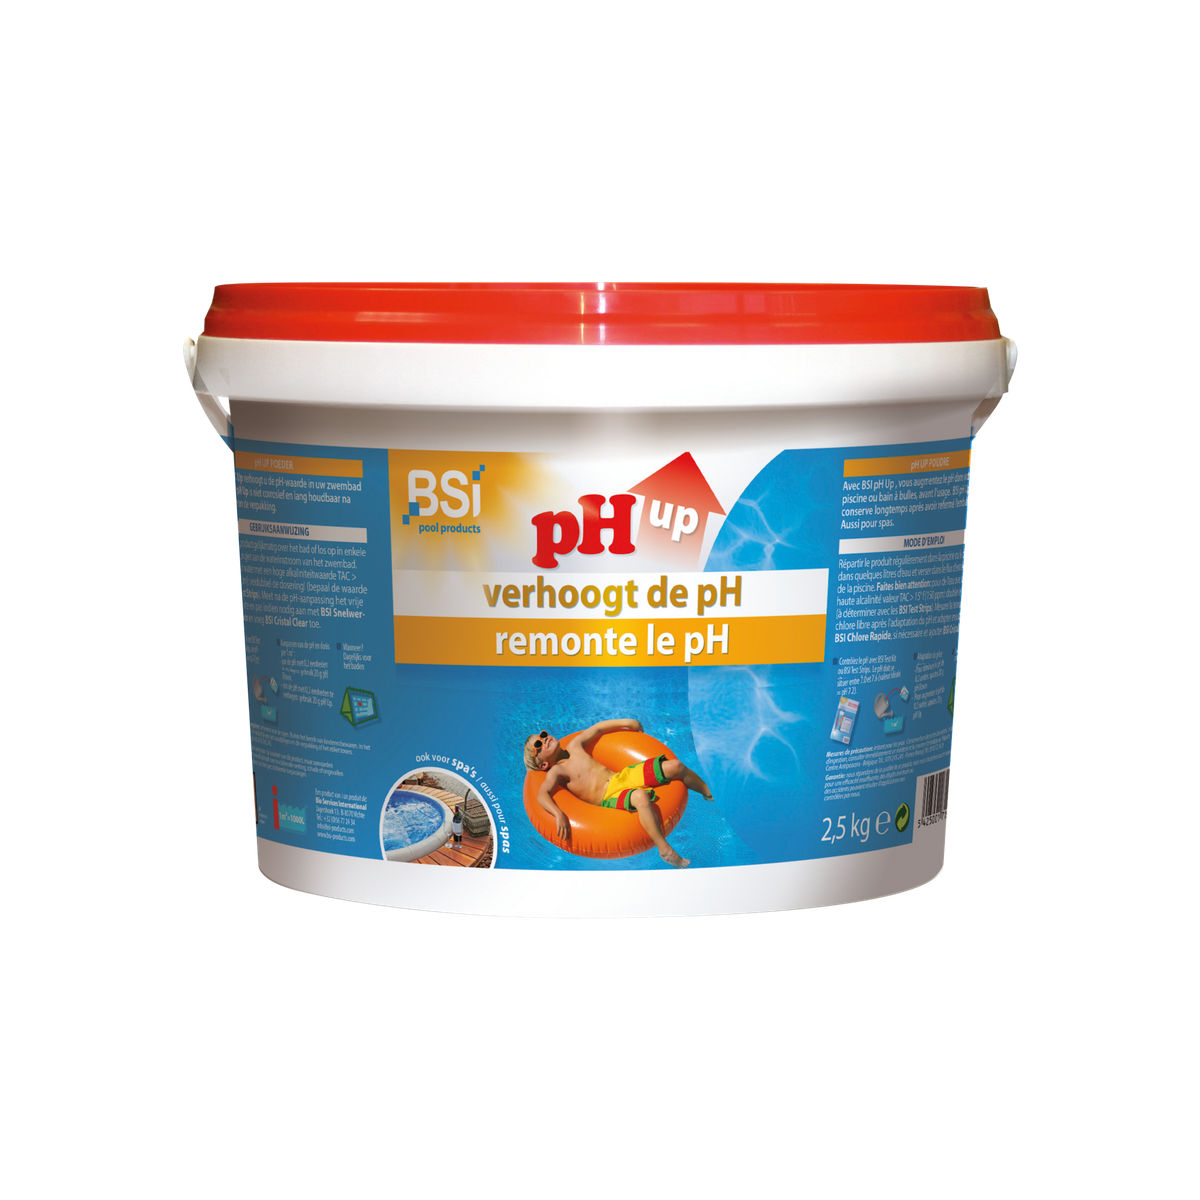 BSI pH up 2,5kg